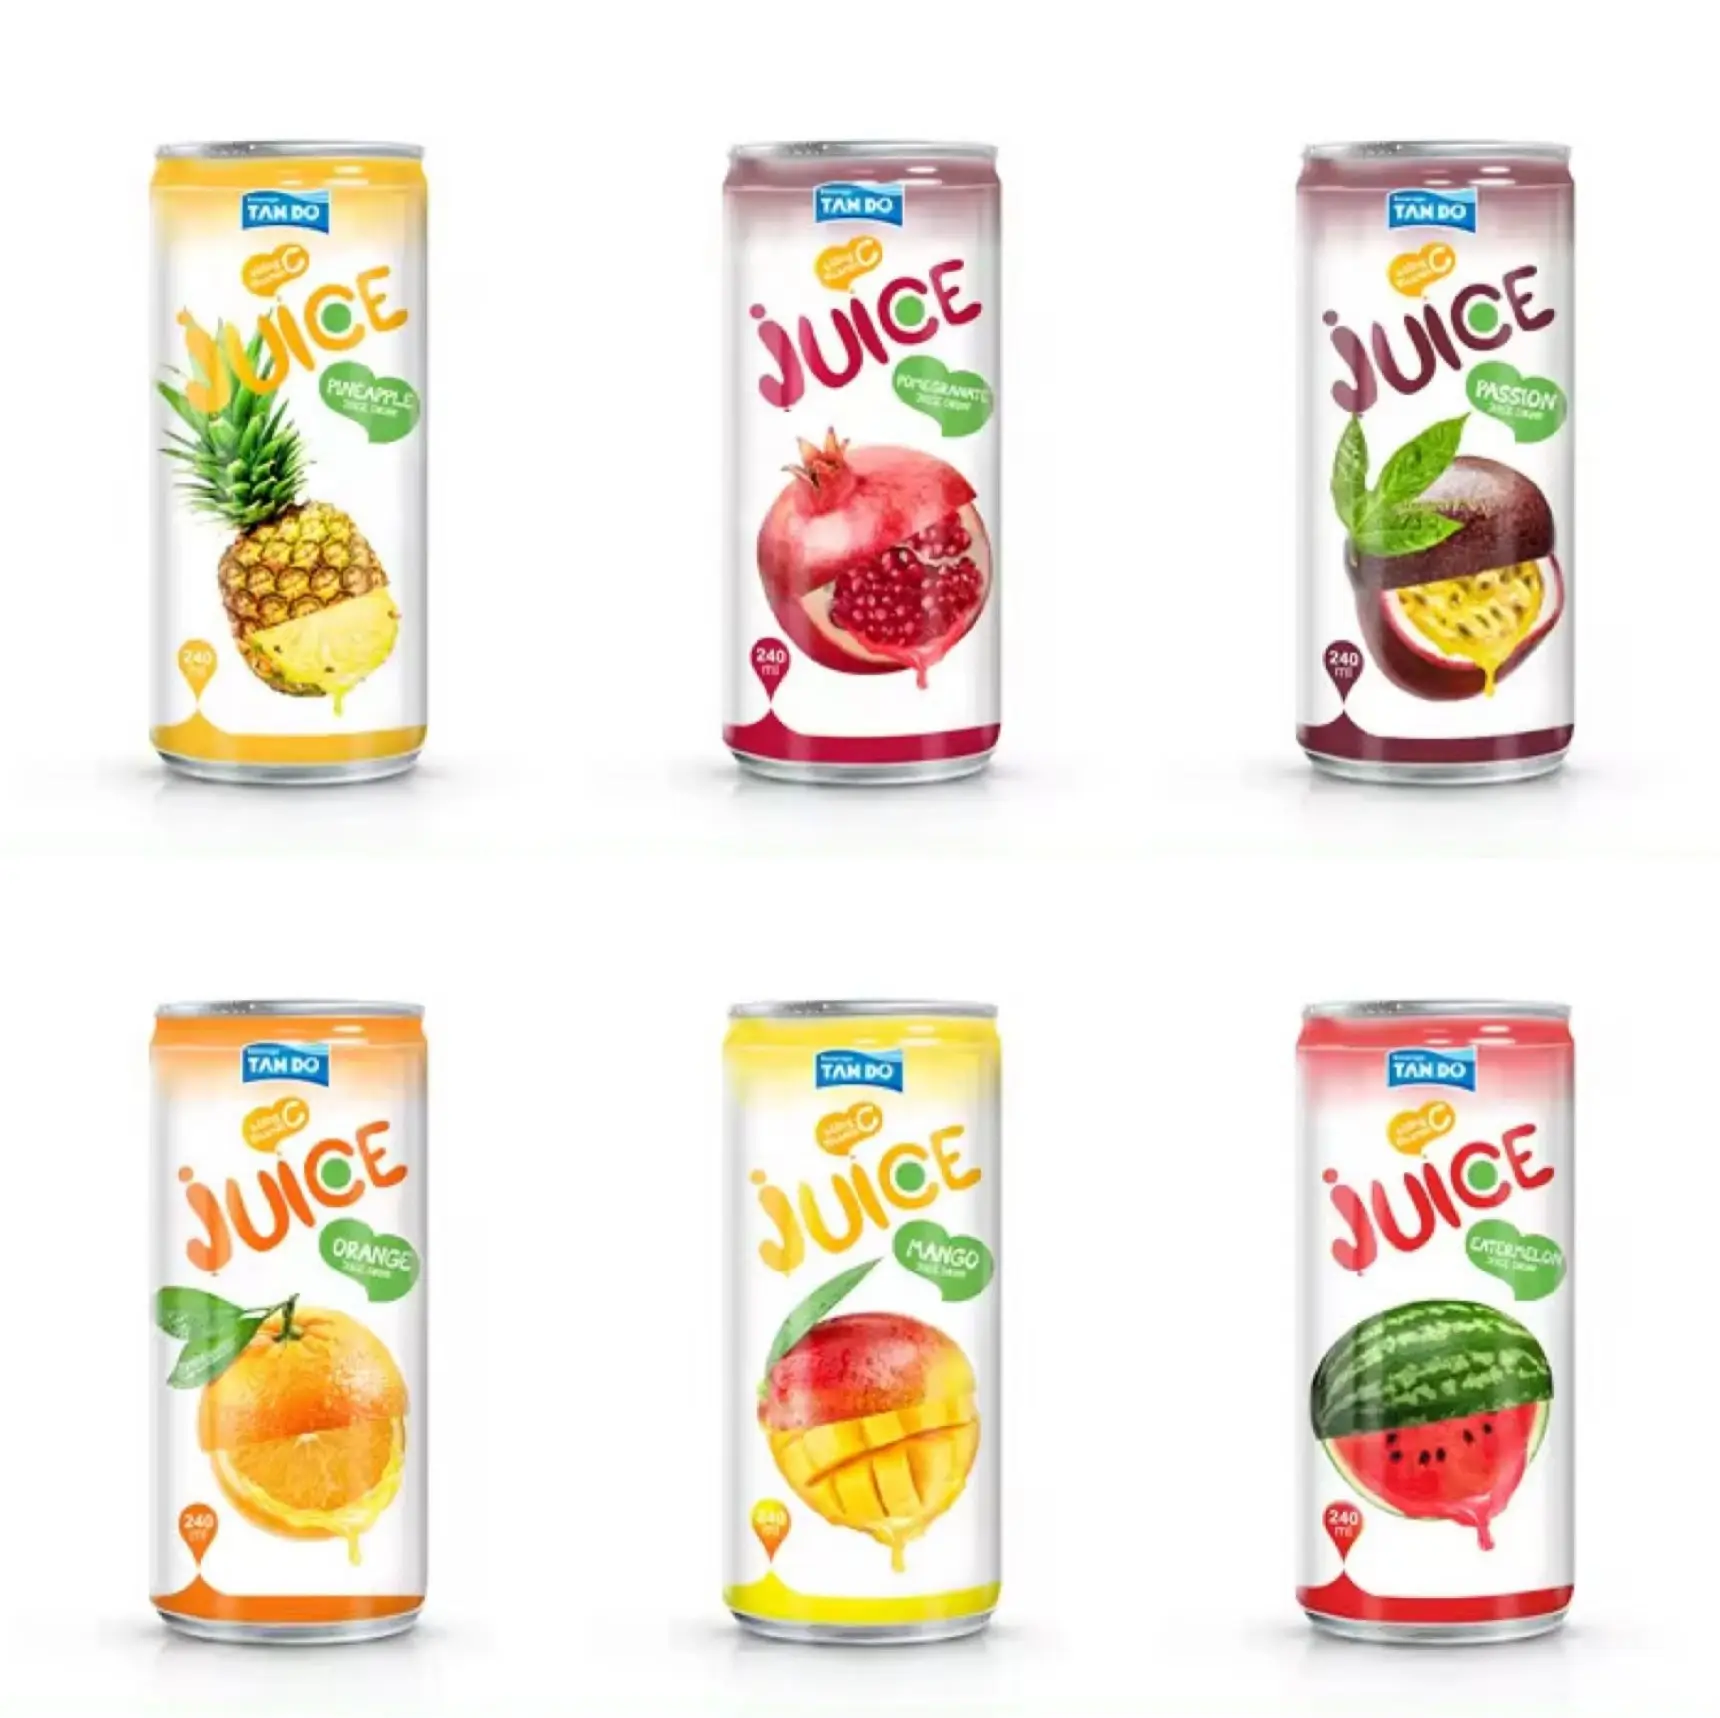 Toptan/özel etiket tropikal saf meyve suyu içecek 250ml Vietnam-ücretsiz örnek-ucuz fiyat-hiçbir ek şeker